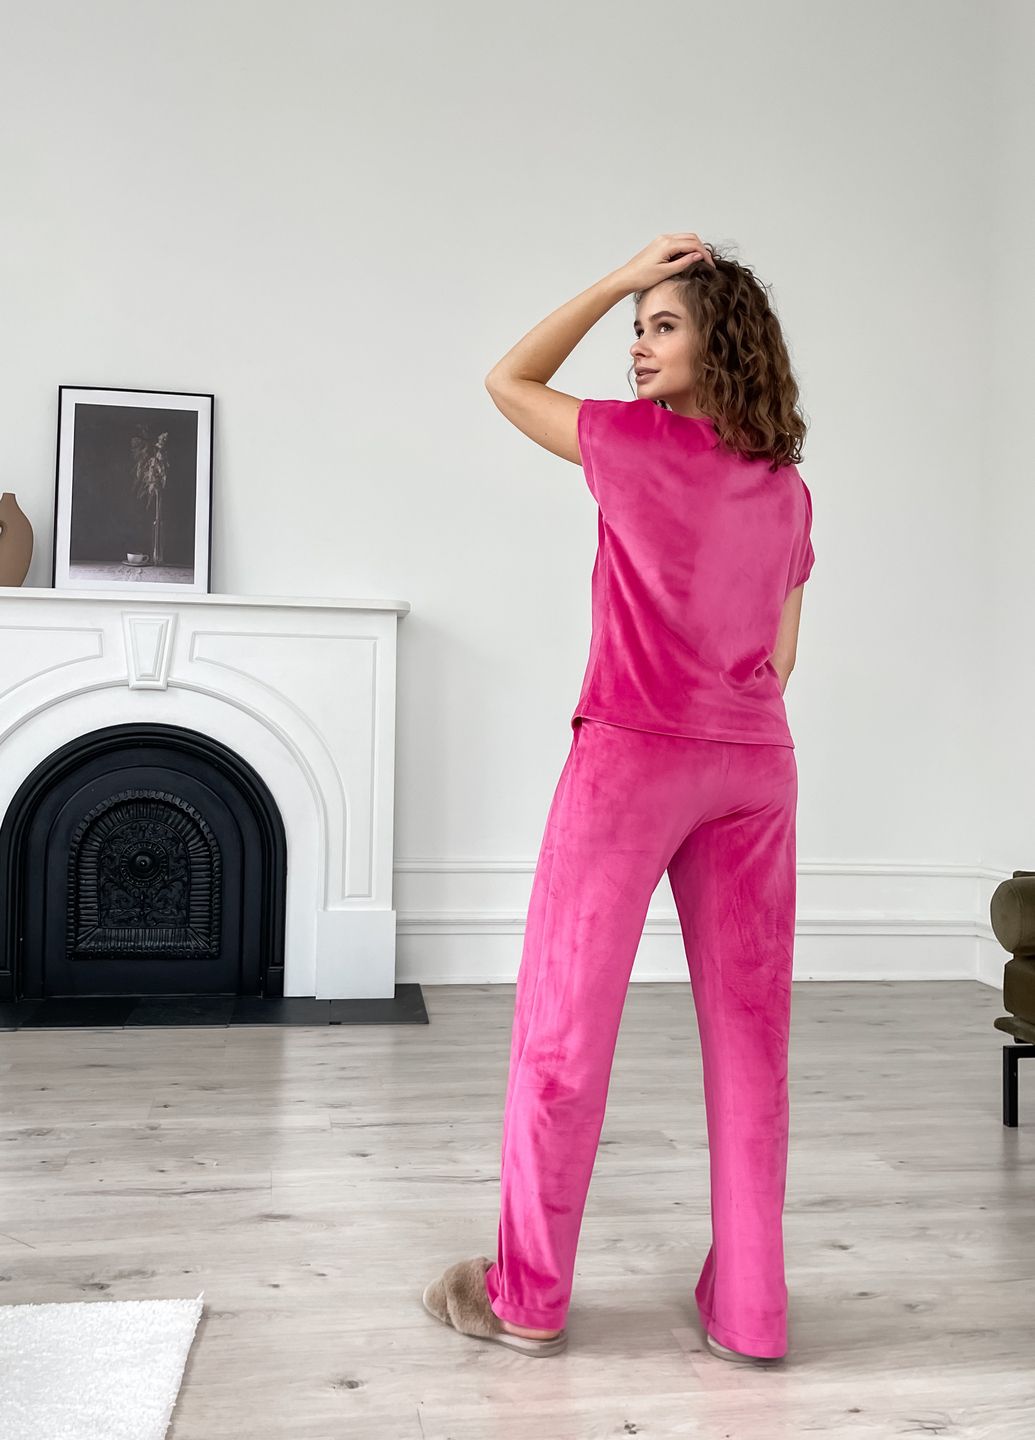 Теплая велюровая женская пижама 3: халат, брюки, футболка малинового цвета Merlini Буя 100000215, размер 42-44